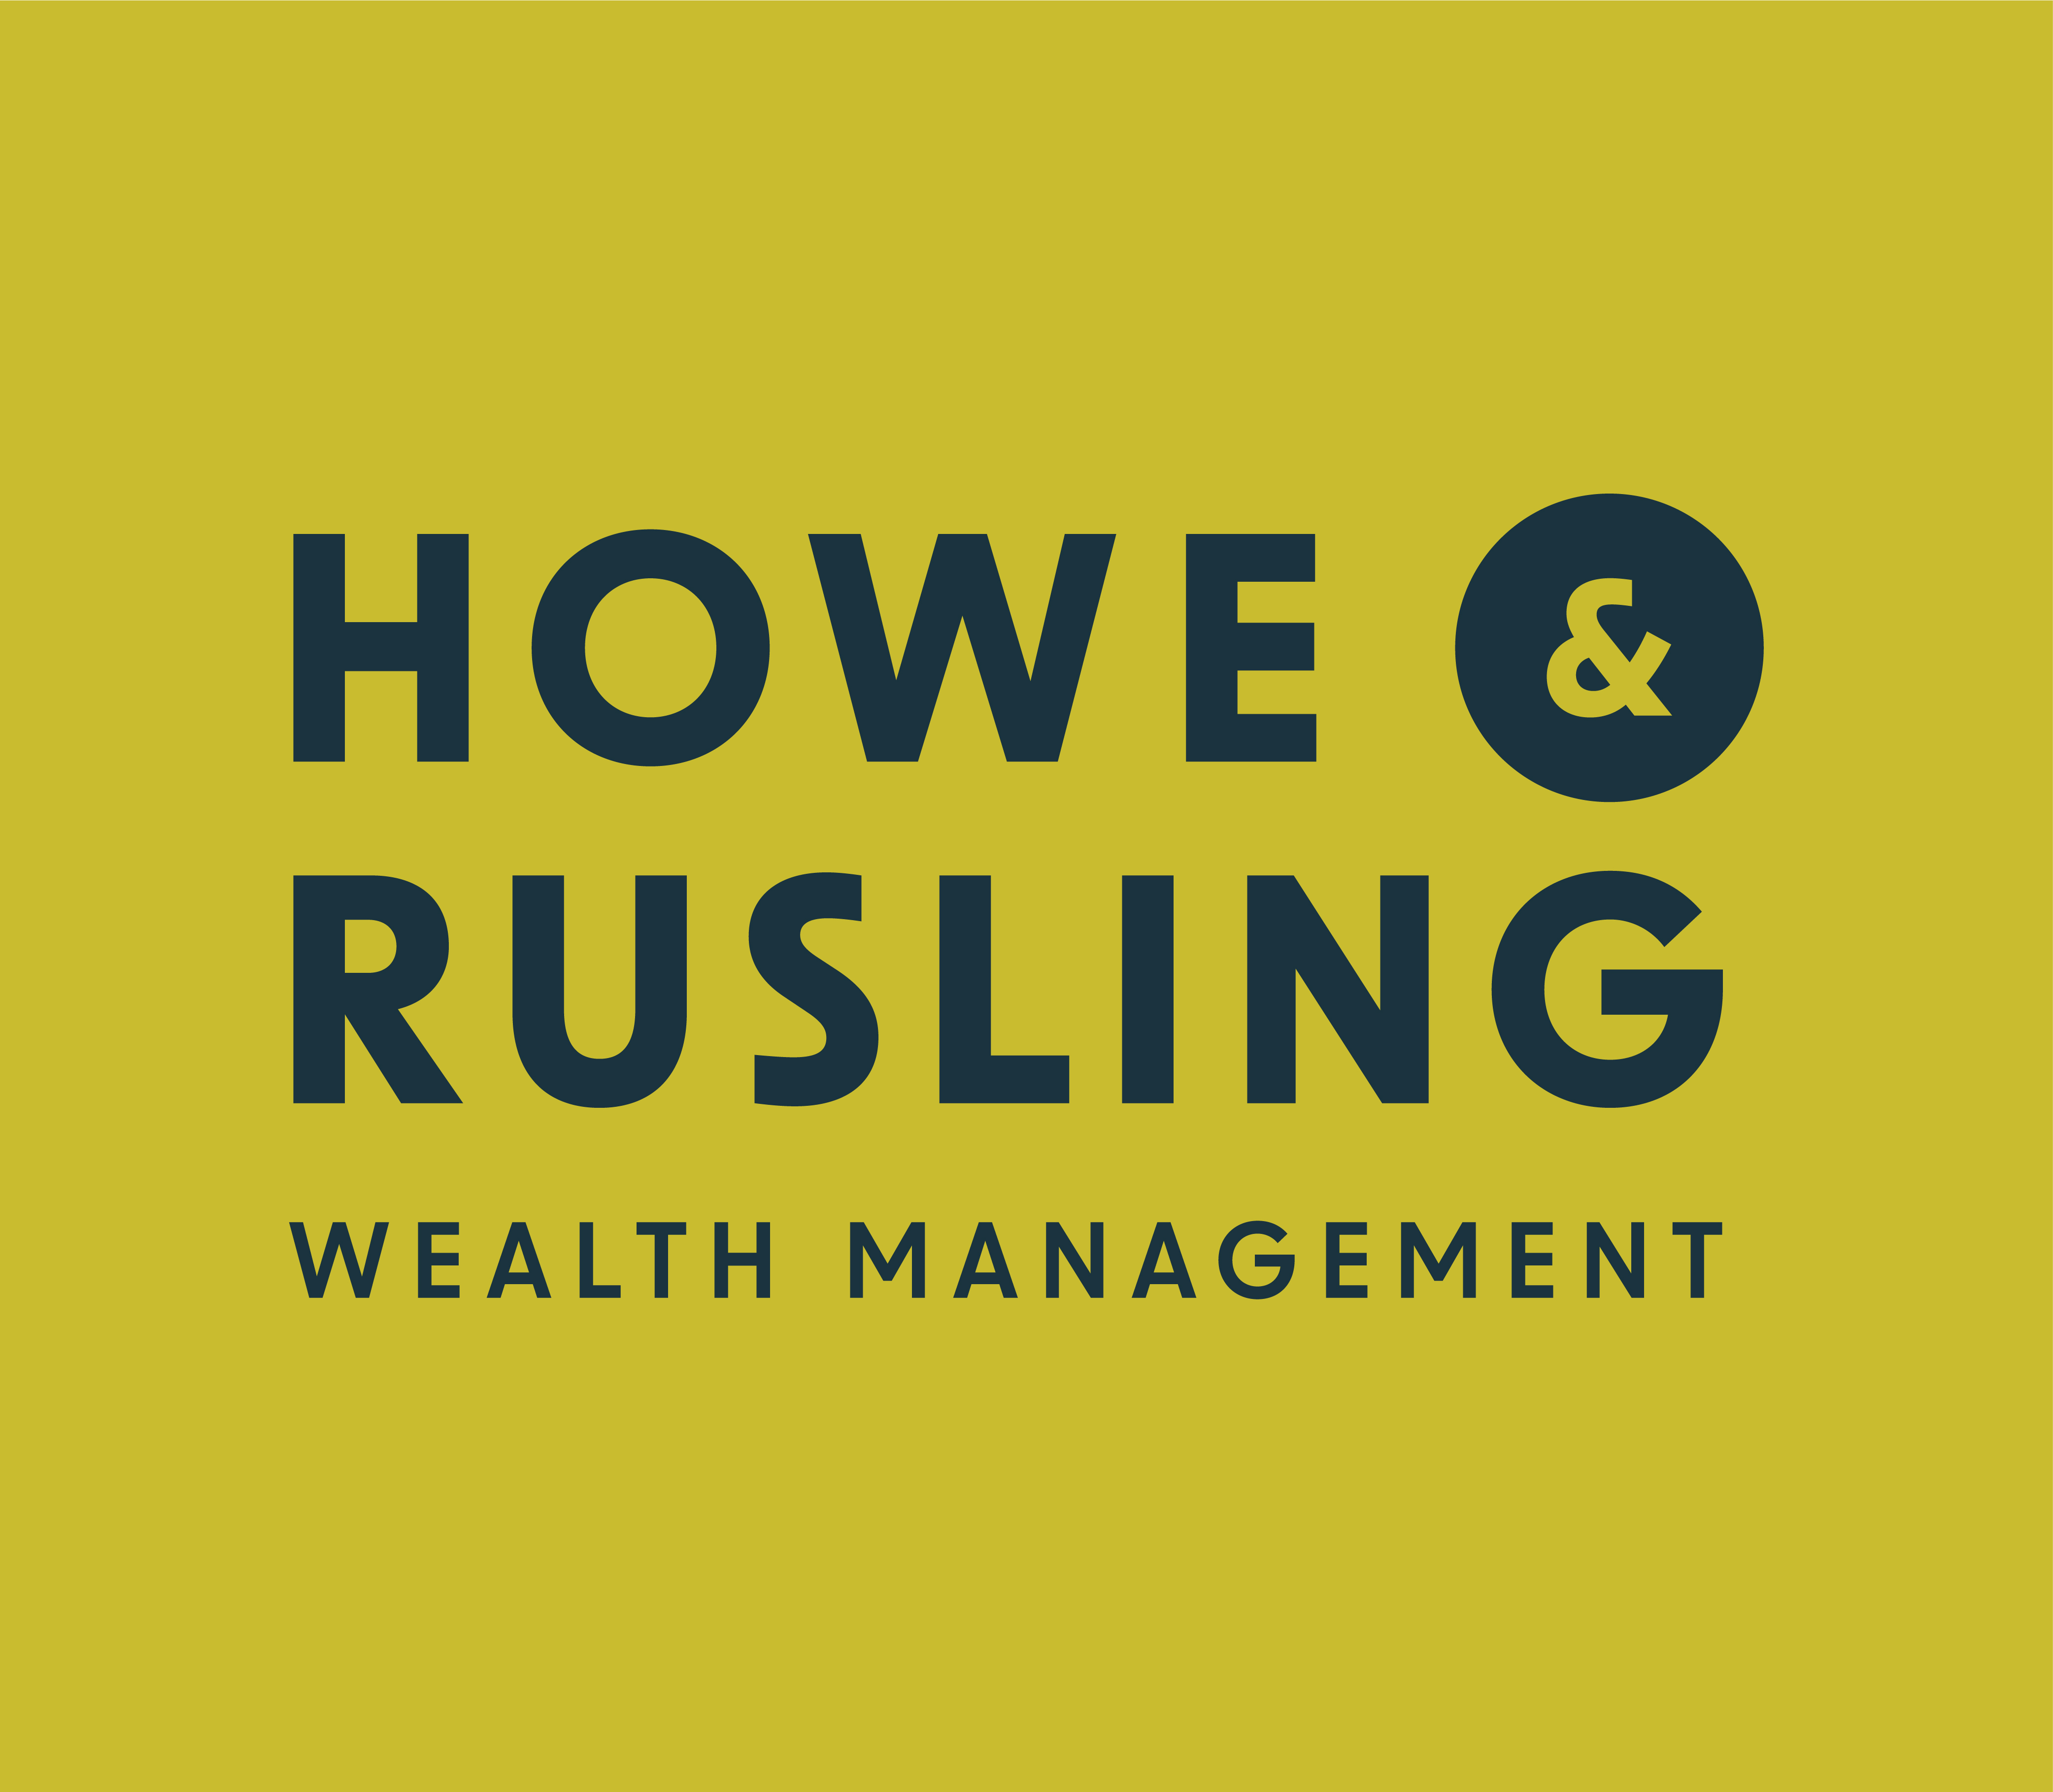 Howe & Rusling Wealth Management